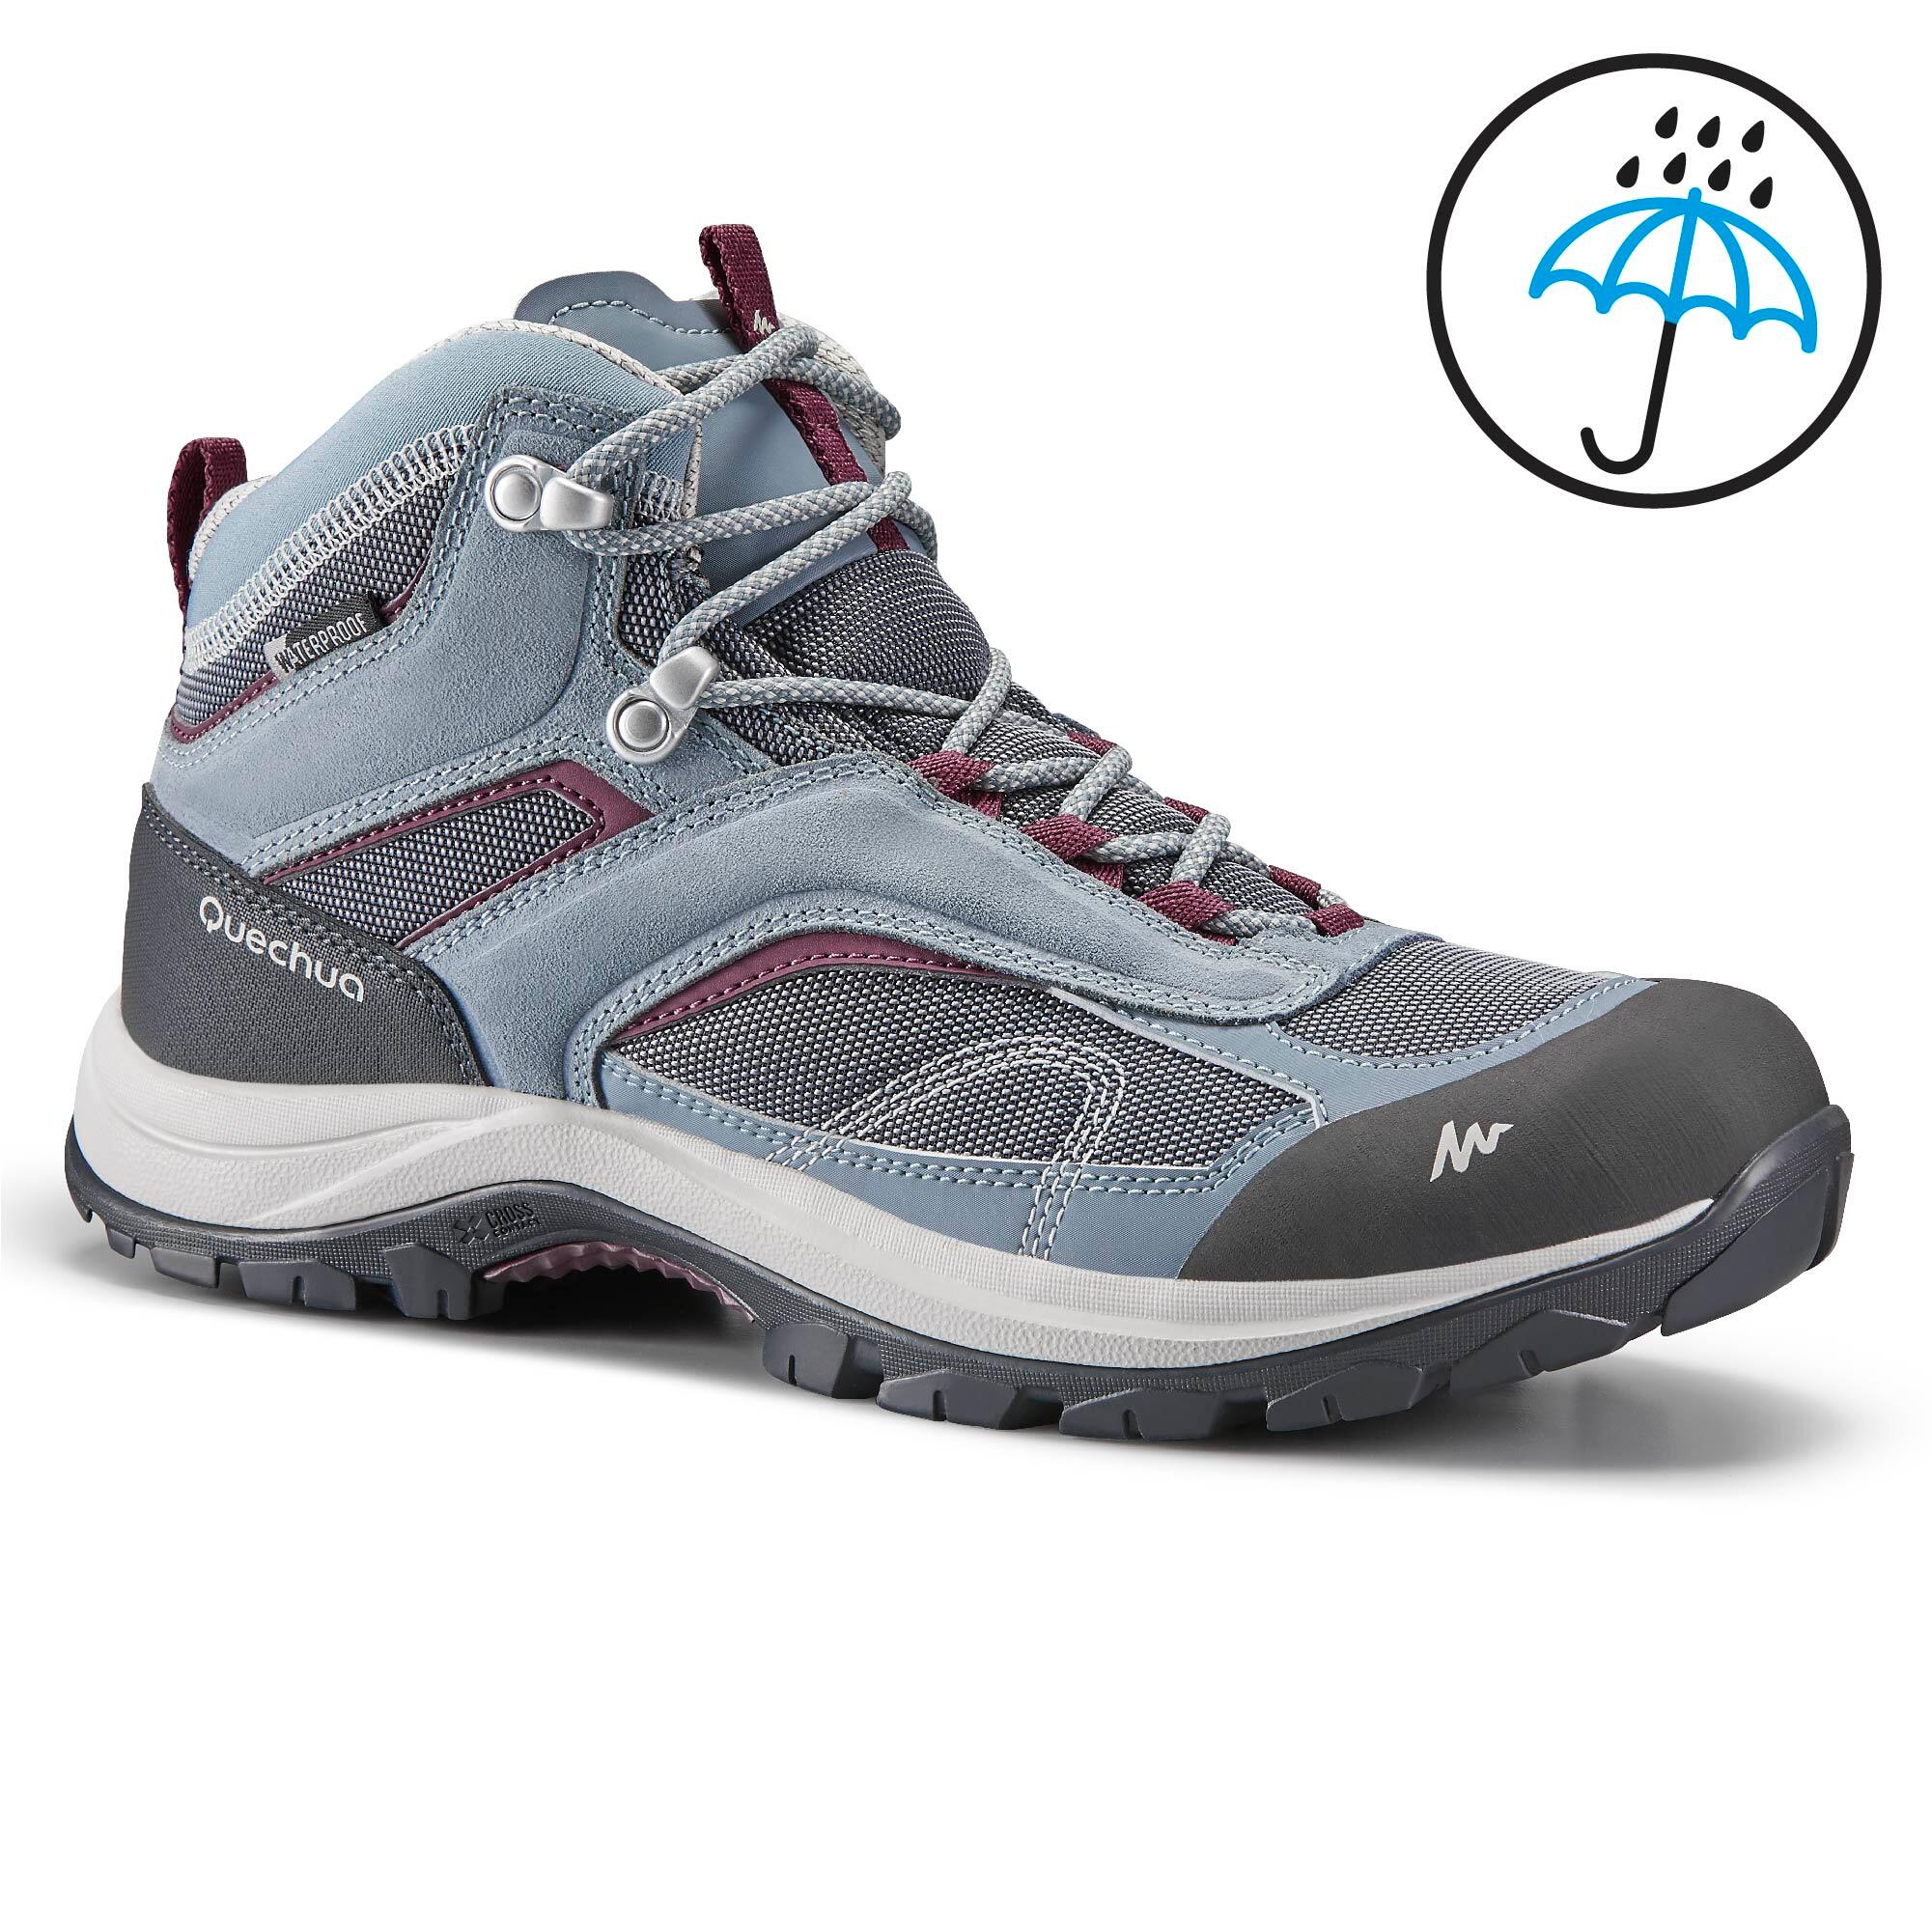 waterproof trekking shoes online